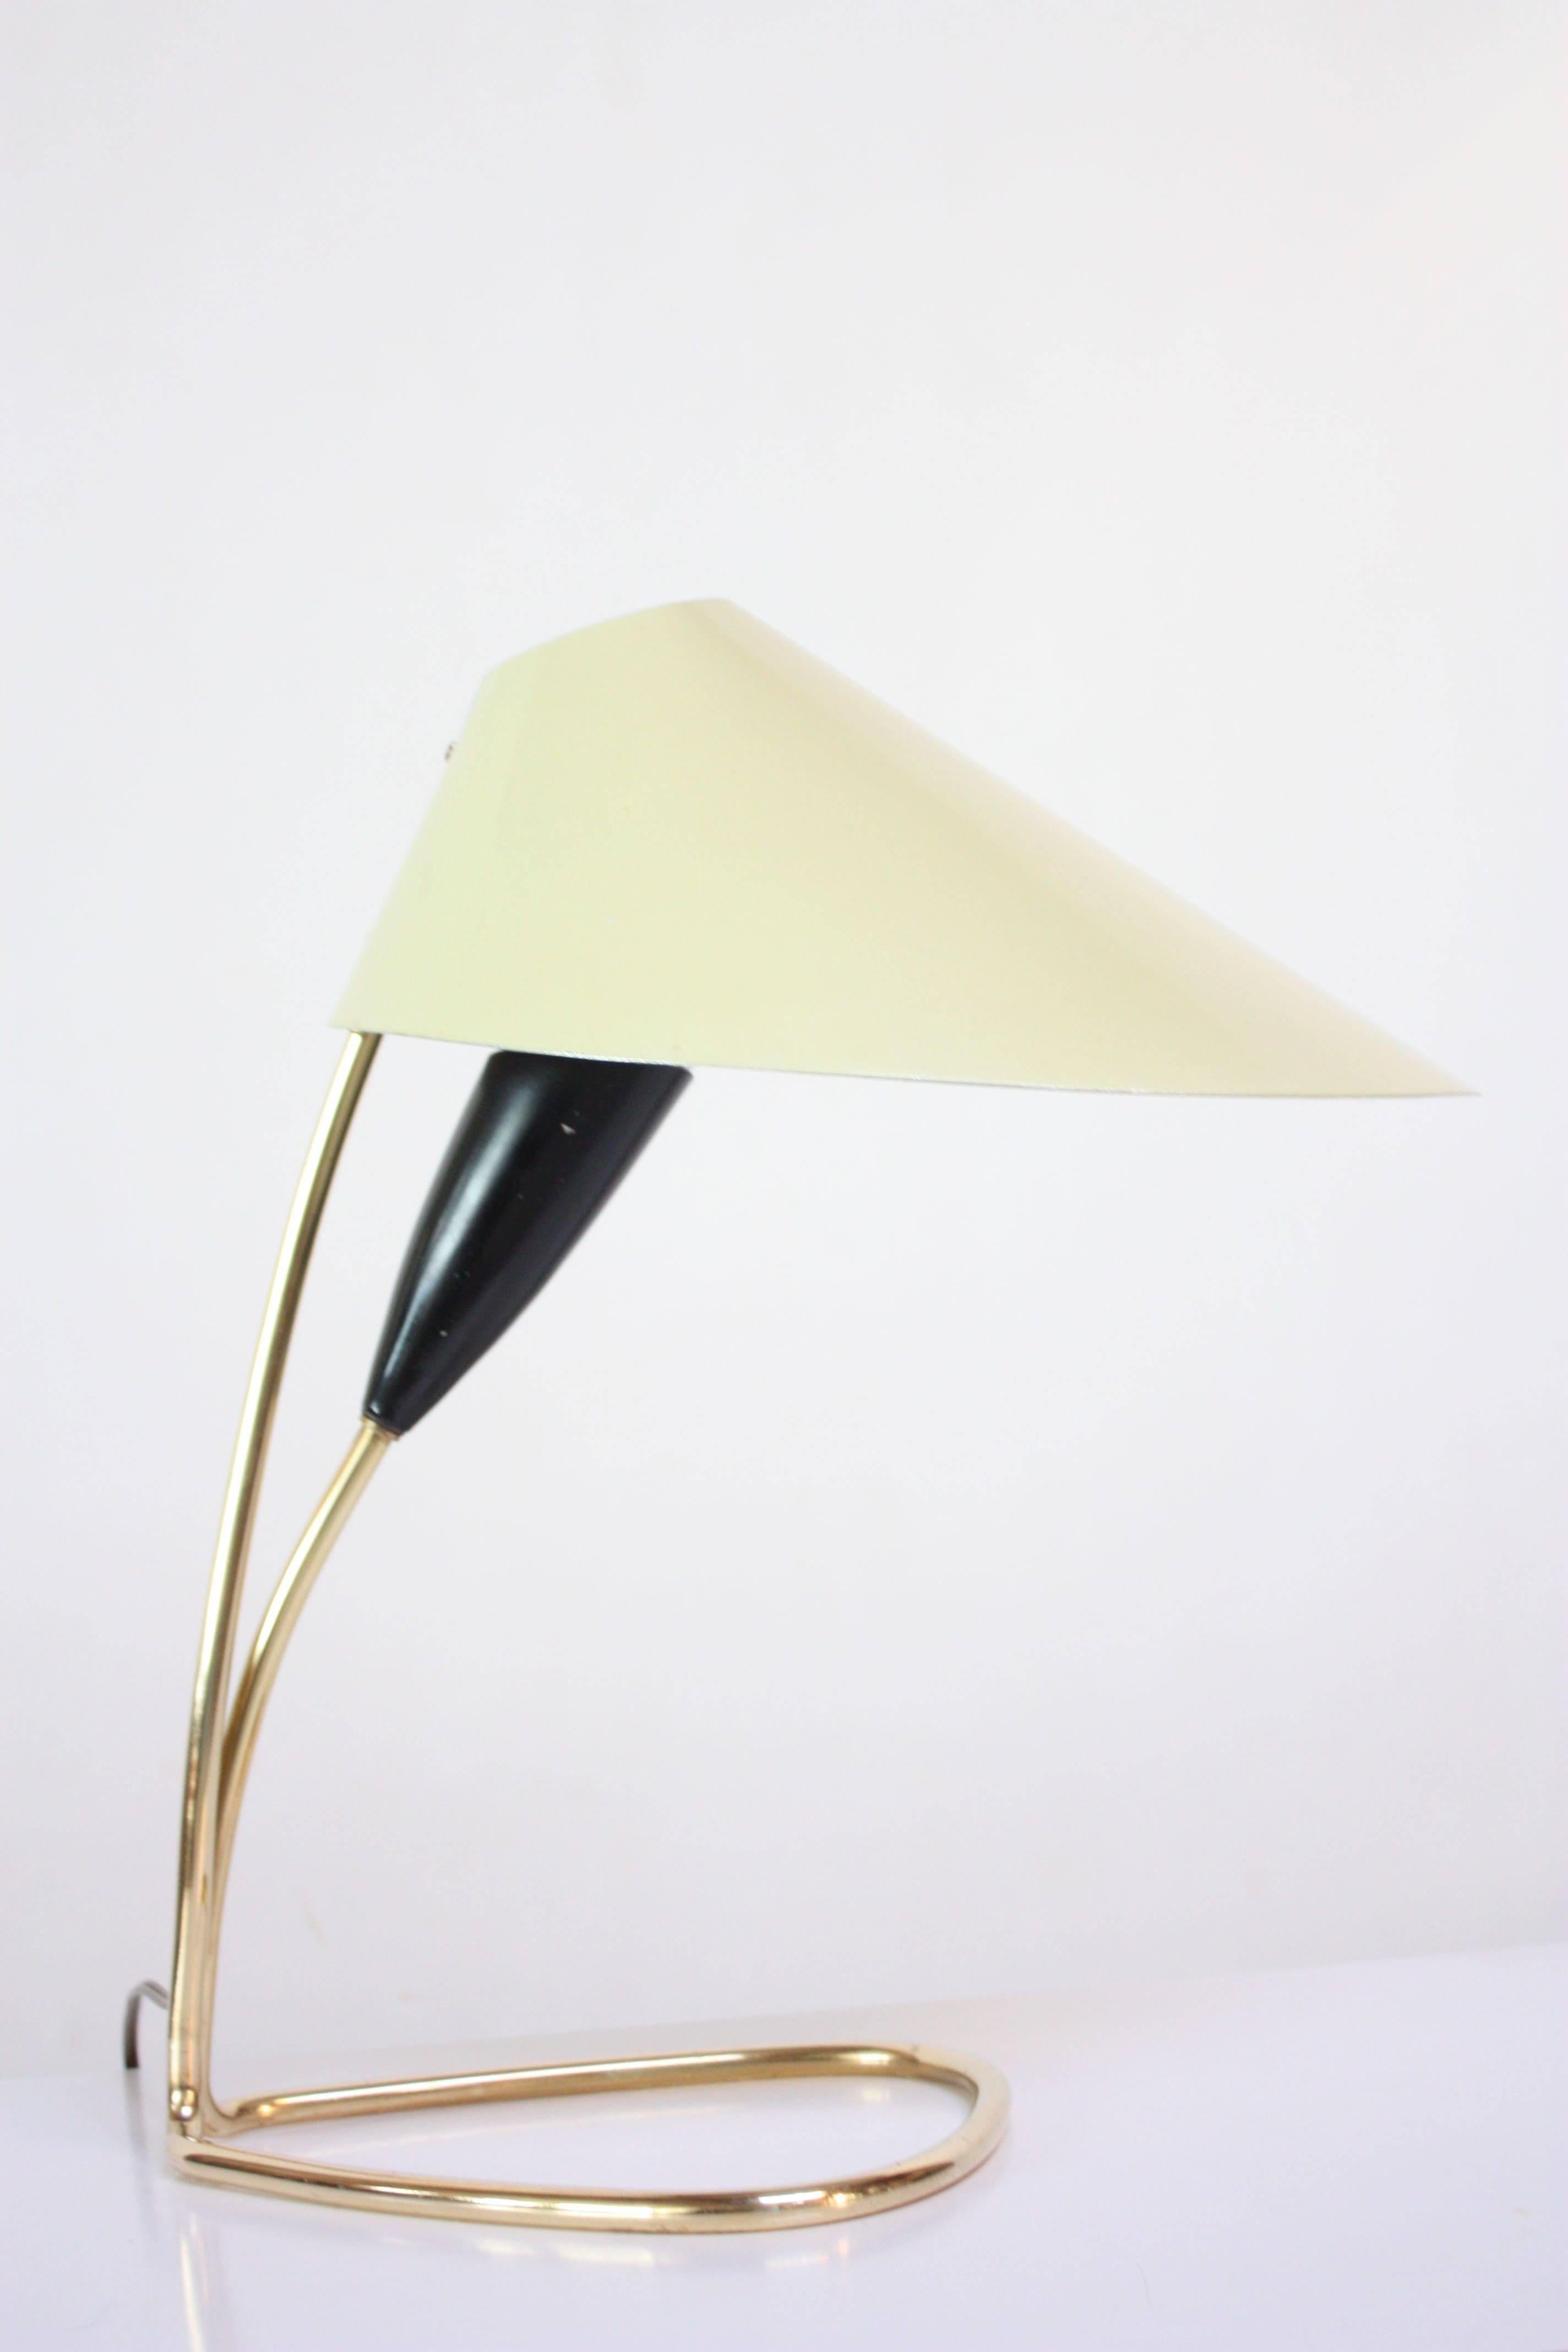 Lampe de table du milieu du 20e siècle composée d'un abat-jour jaune pâle surdimensionné (ressemblant à un pétale de lys) avec une douille intérieure en métal noir et une base tubulaire en laiton / quincaillerie en laiton. Pièce simple, mais